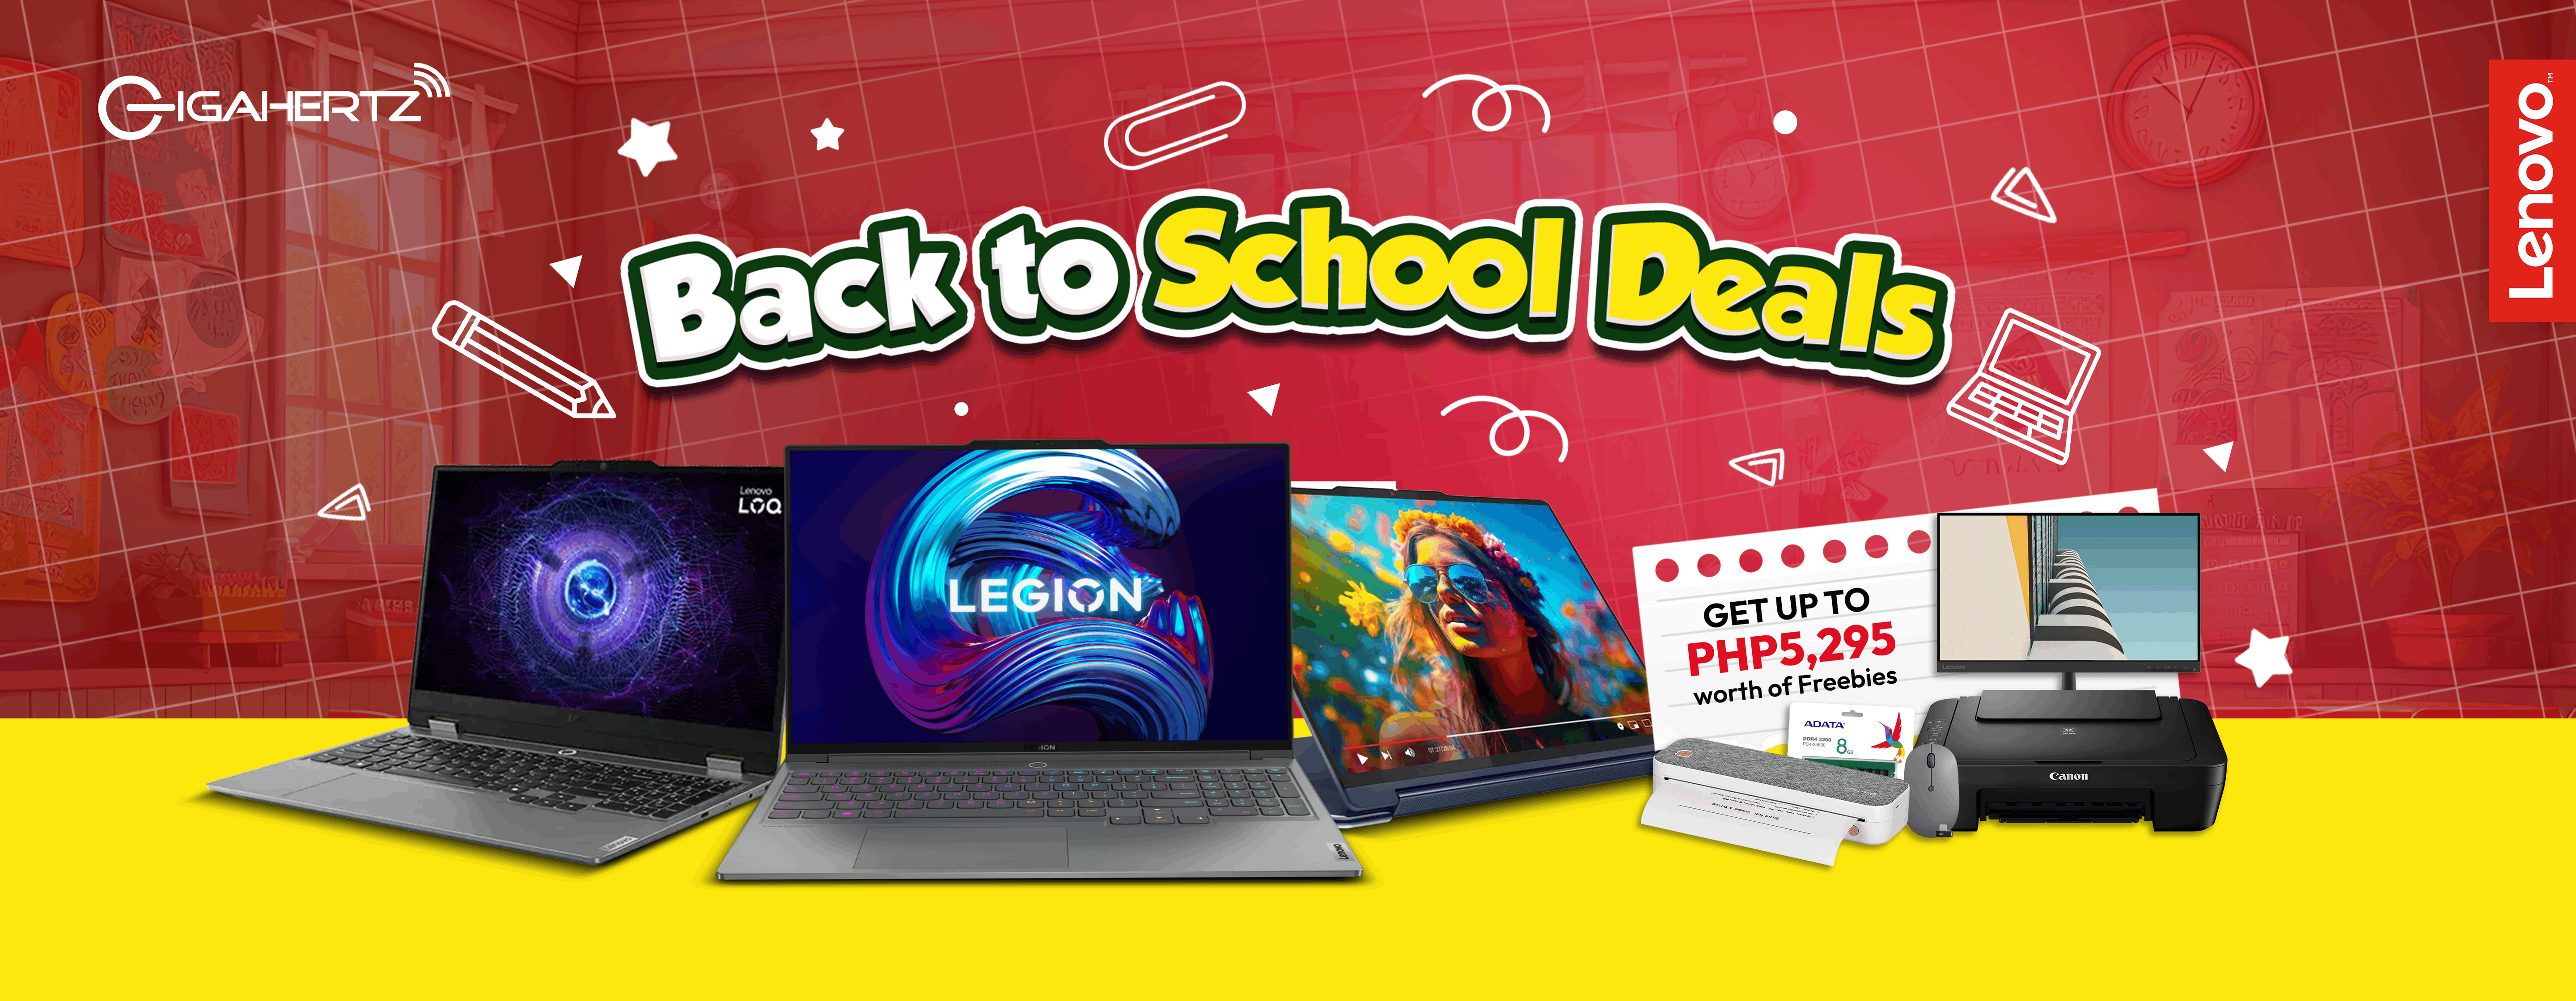 Lenovo student discounts | Best laptops for school | Latest Lenovo models | Student laptop bundle | Gigahertz